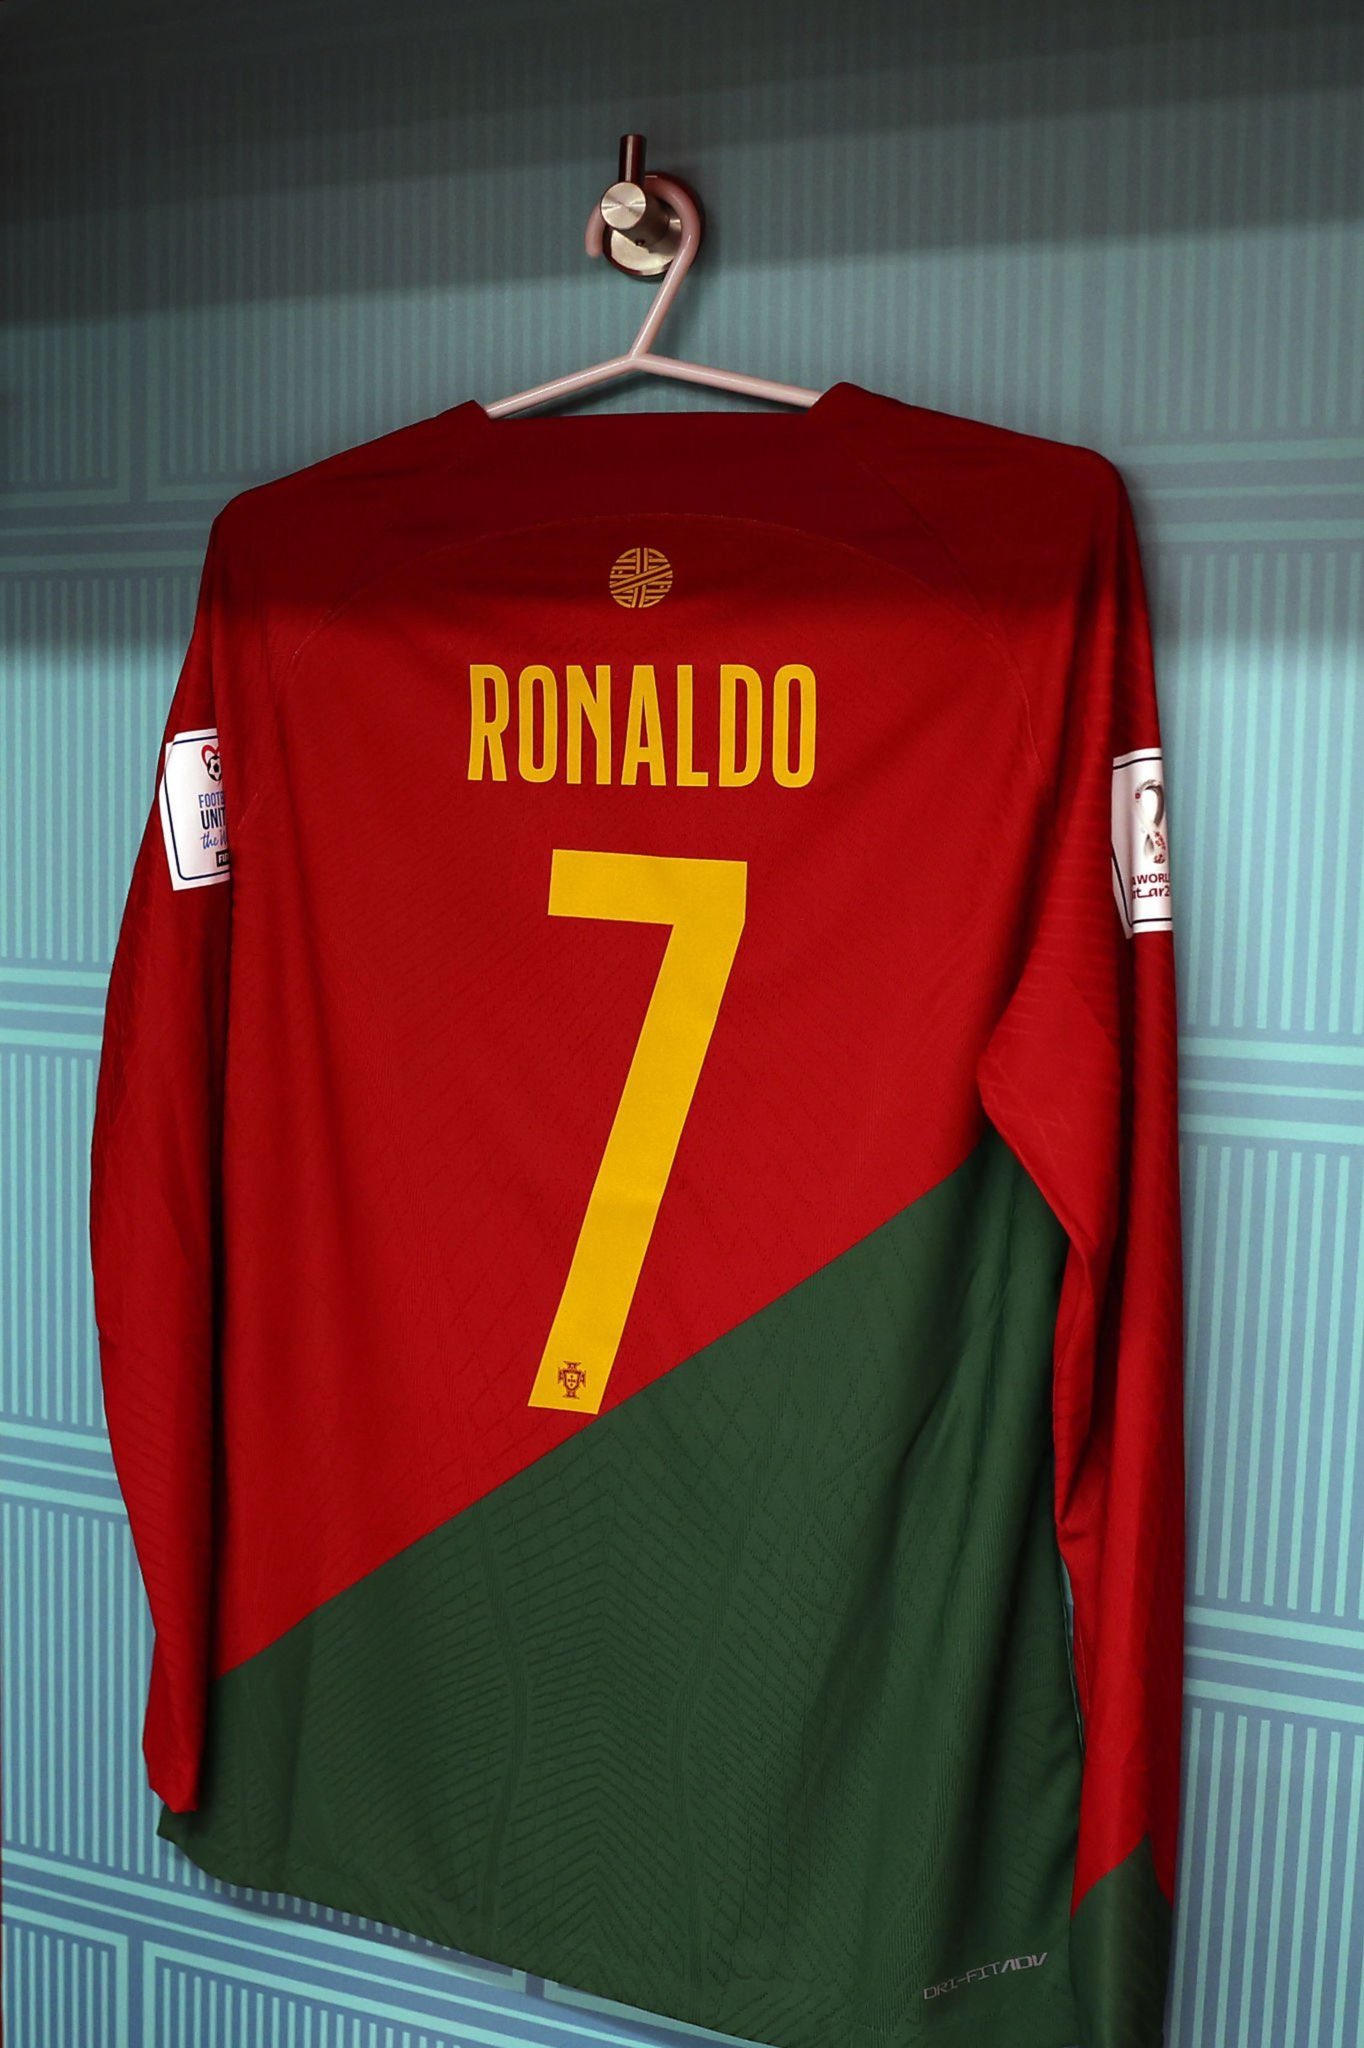 Ups cabina bicapa تويتر \ Blue على تويتر: "La camiseta de Cristiano Ronaldo con Portugal 🇵🇹  ya está lista, para el partido de hoy contra Ghana 🇬🇭 en el Mundial de  #Qatar2022 #FIFAWorldCup https://t.co/tE26uGpcXC"